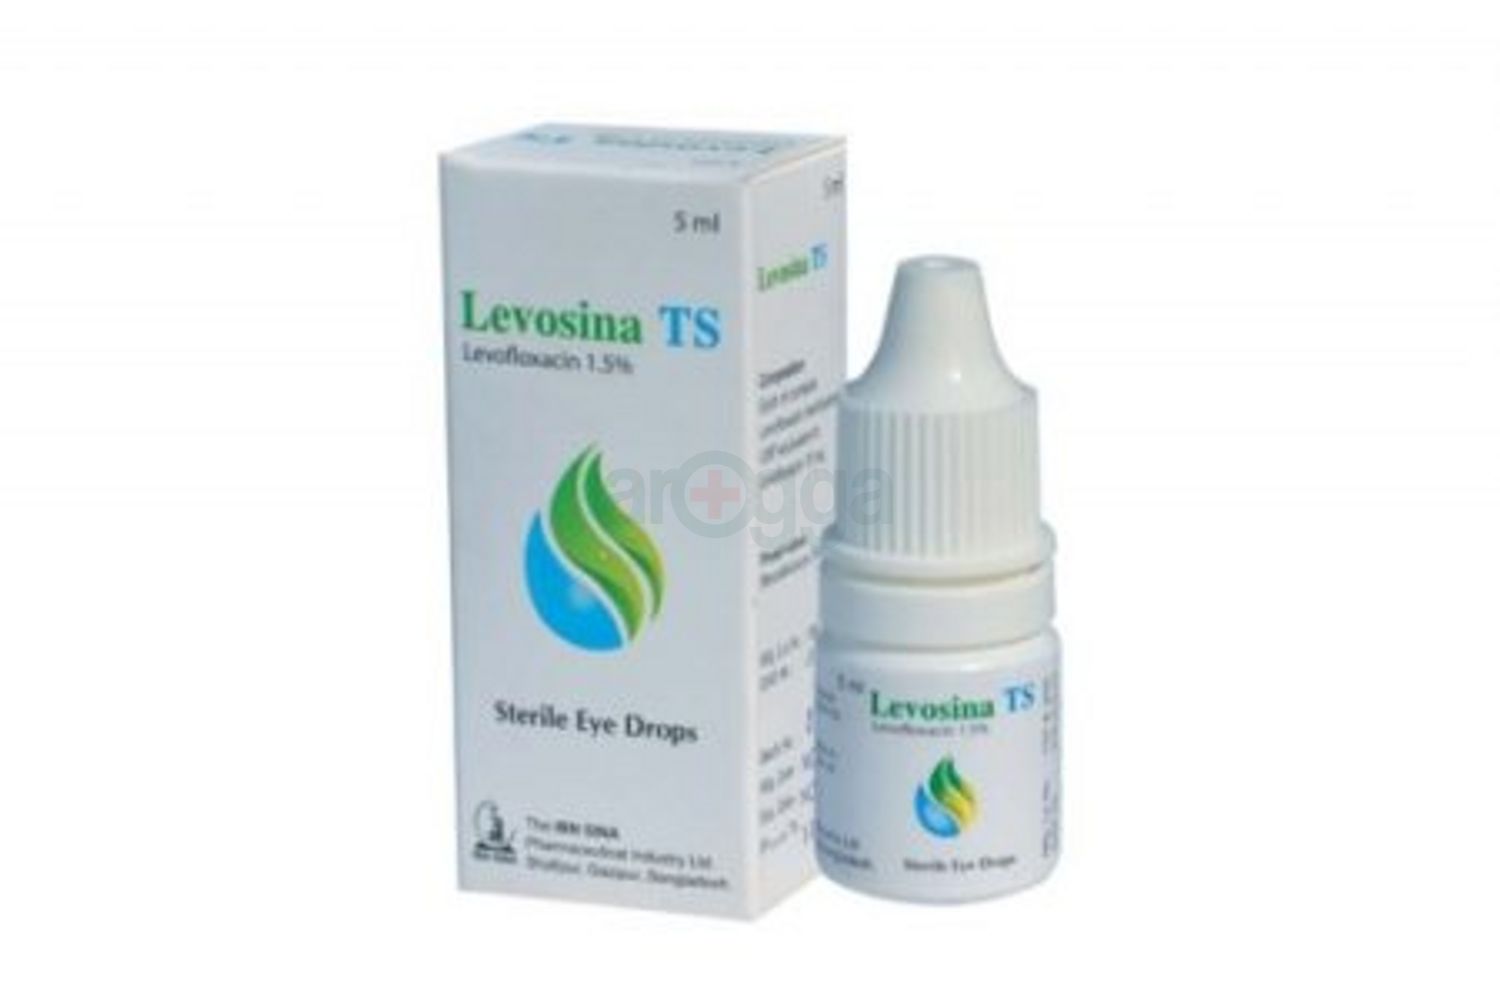 Levosina TS